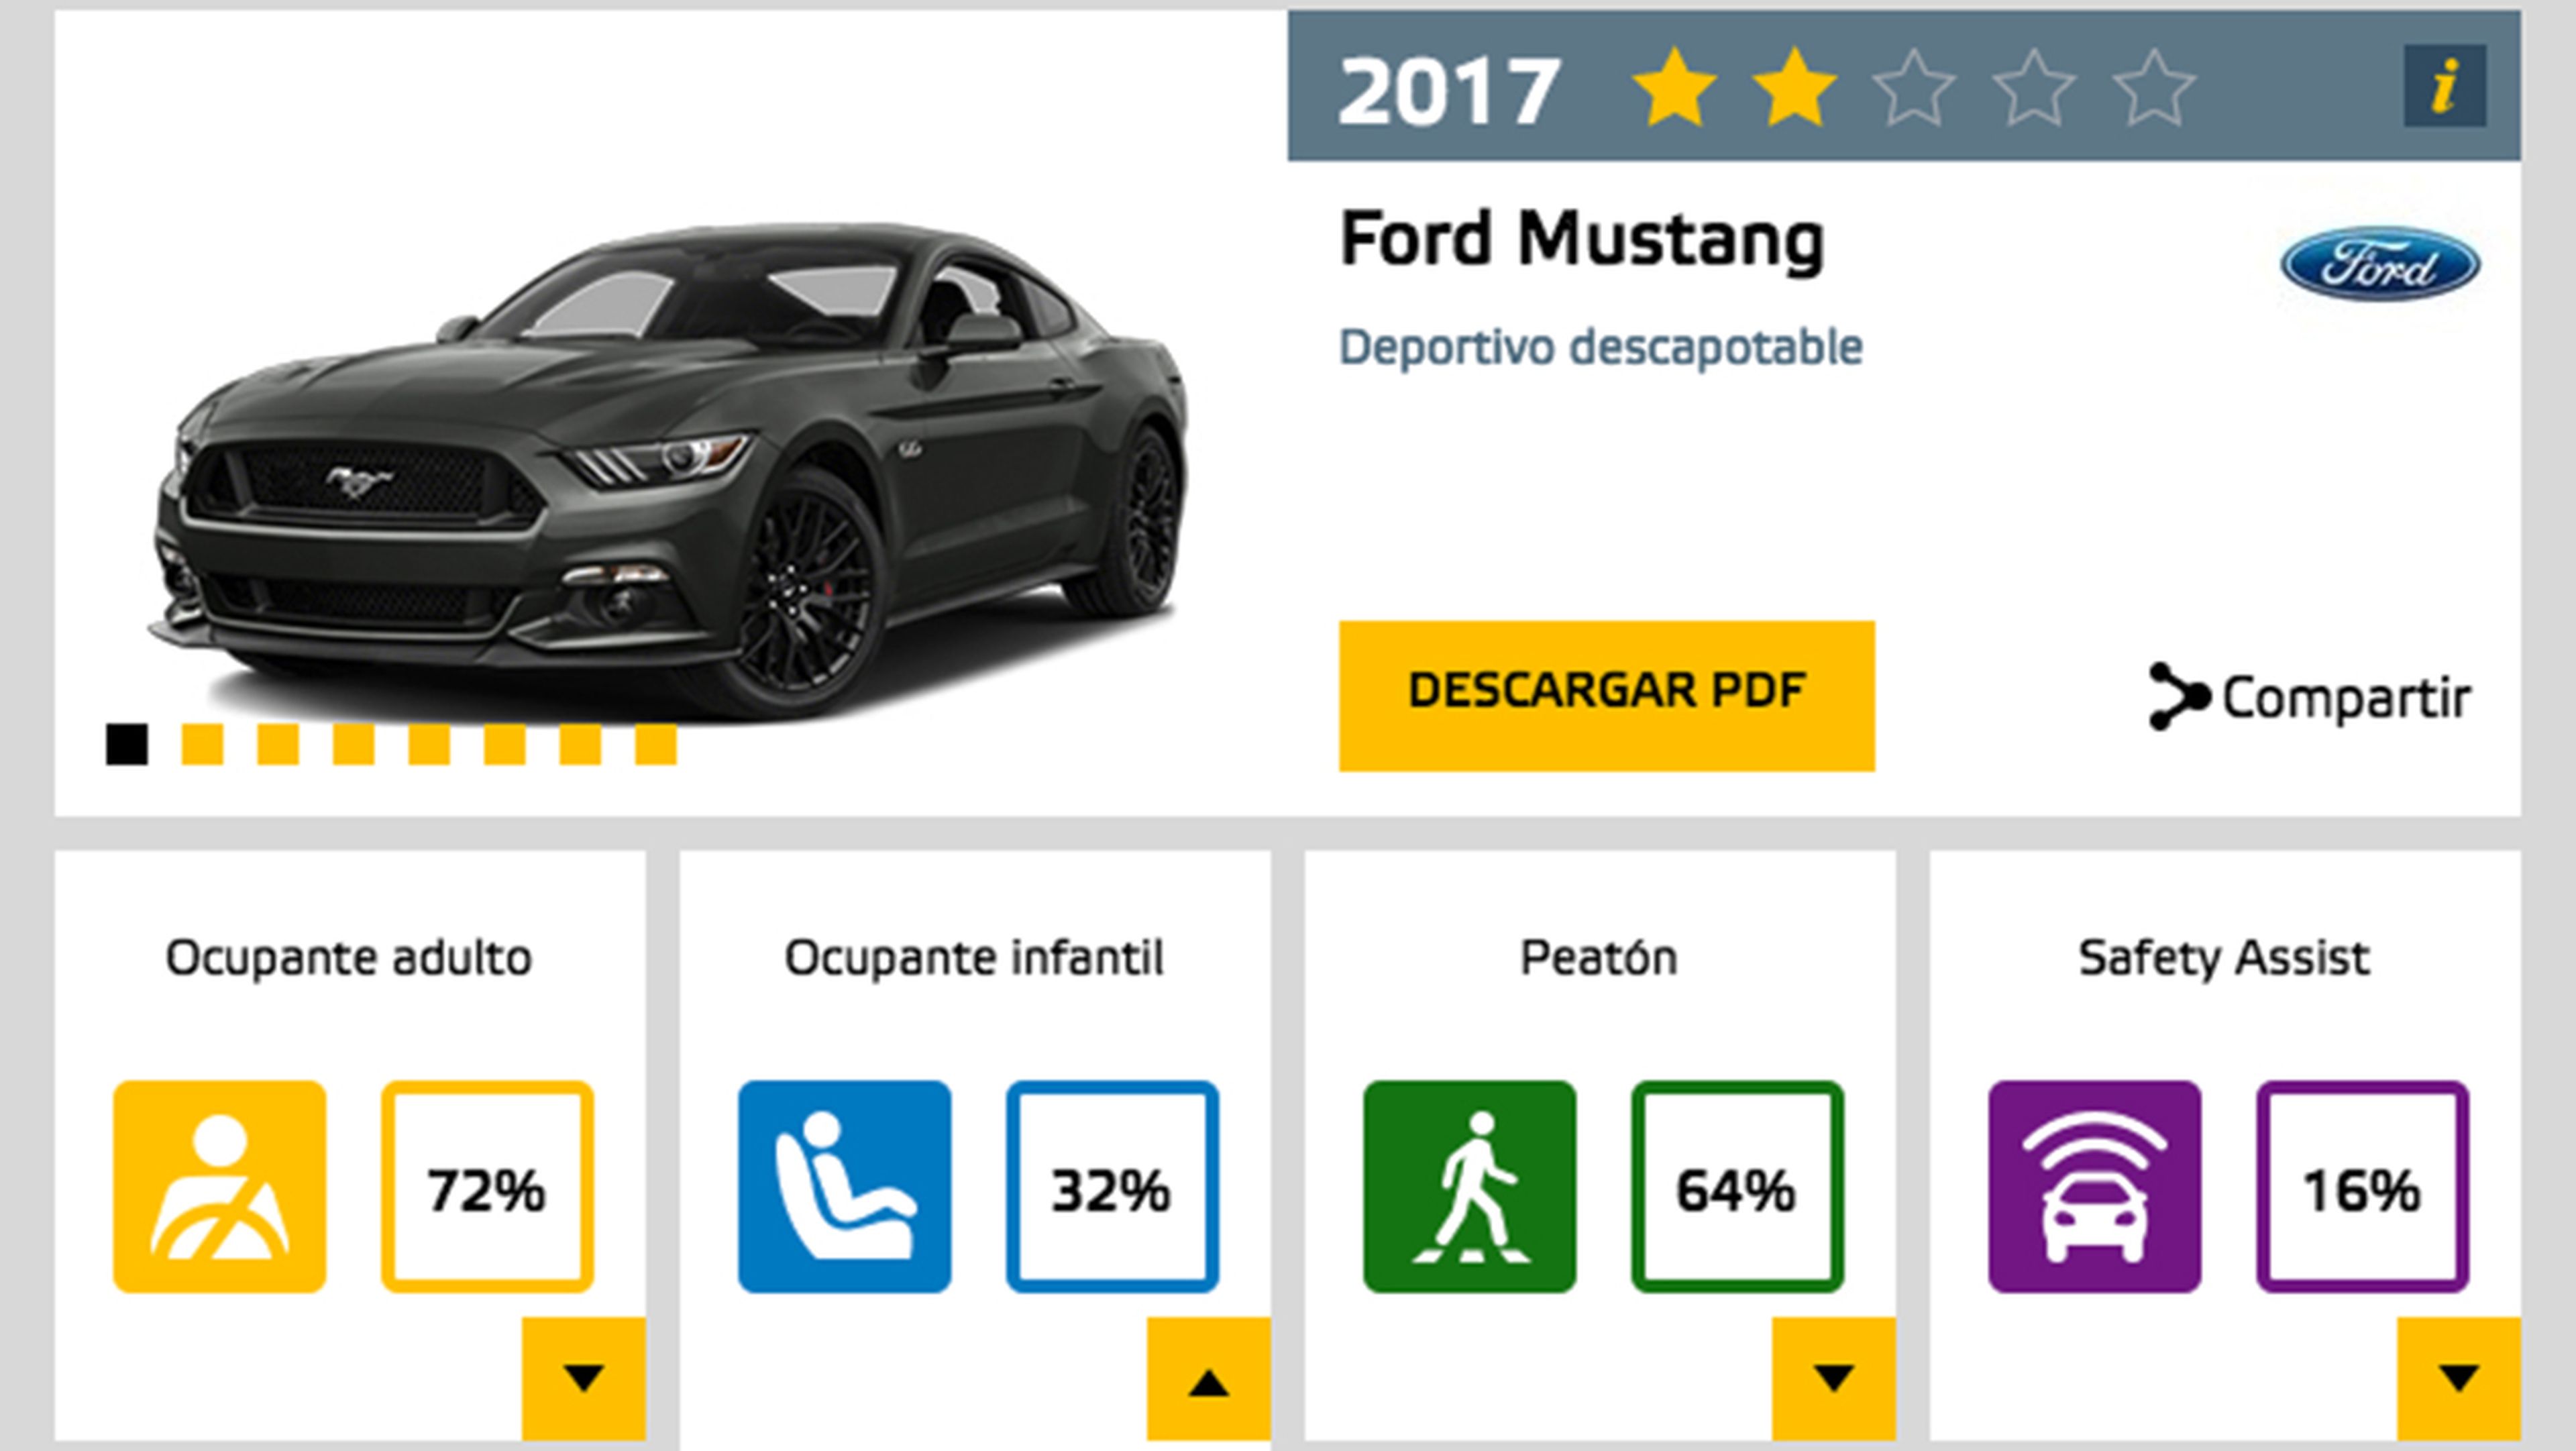 El Ford Mustang sólo obtiene dos estrellas EuroNCAP